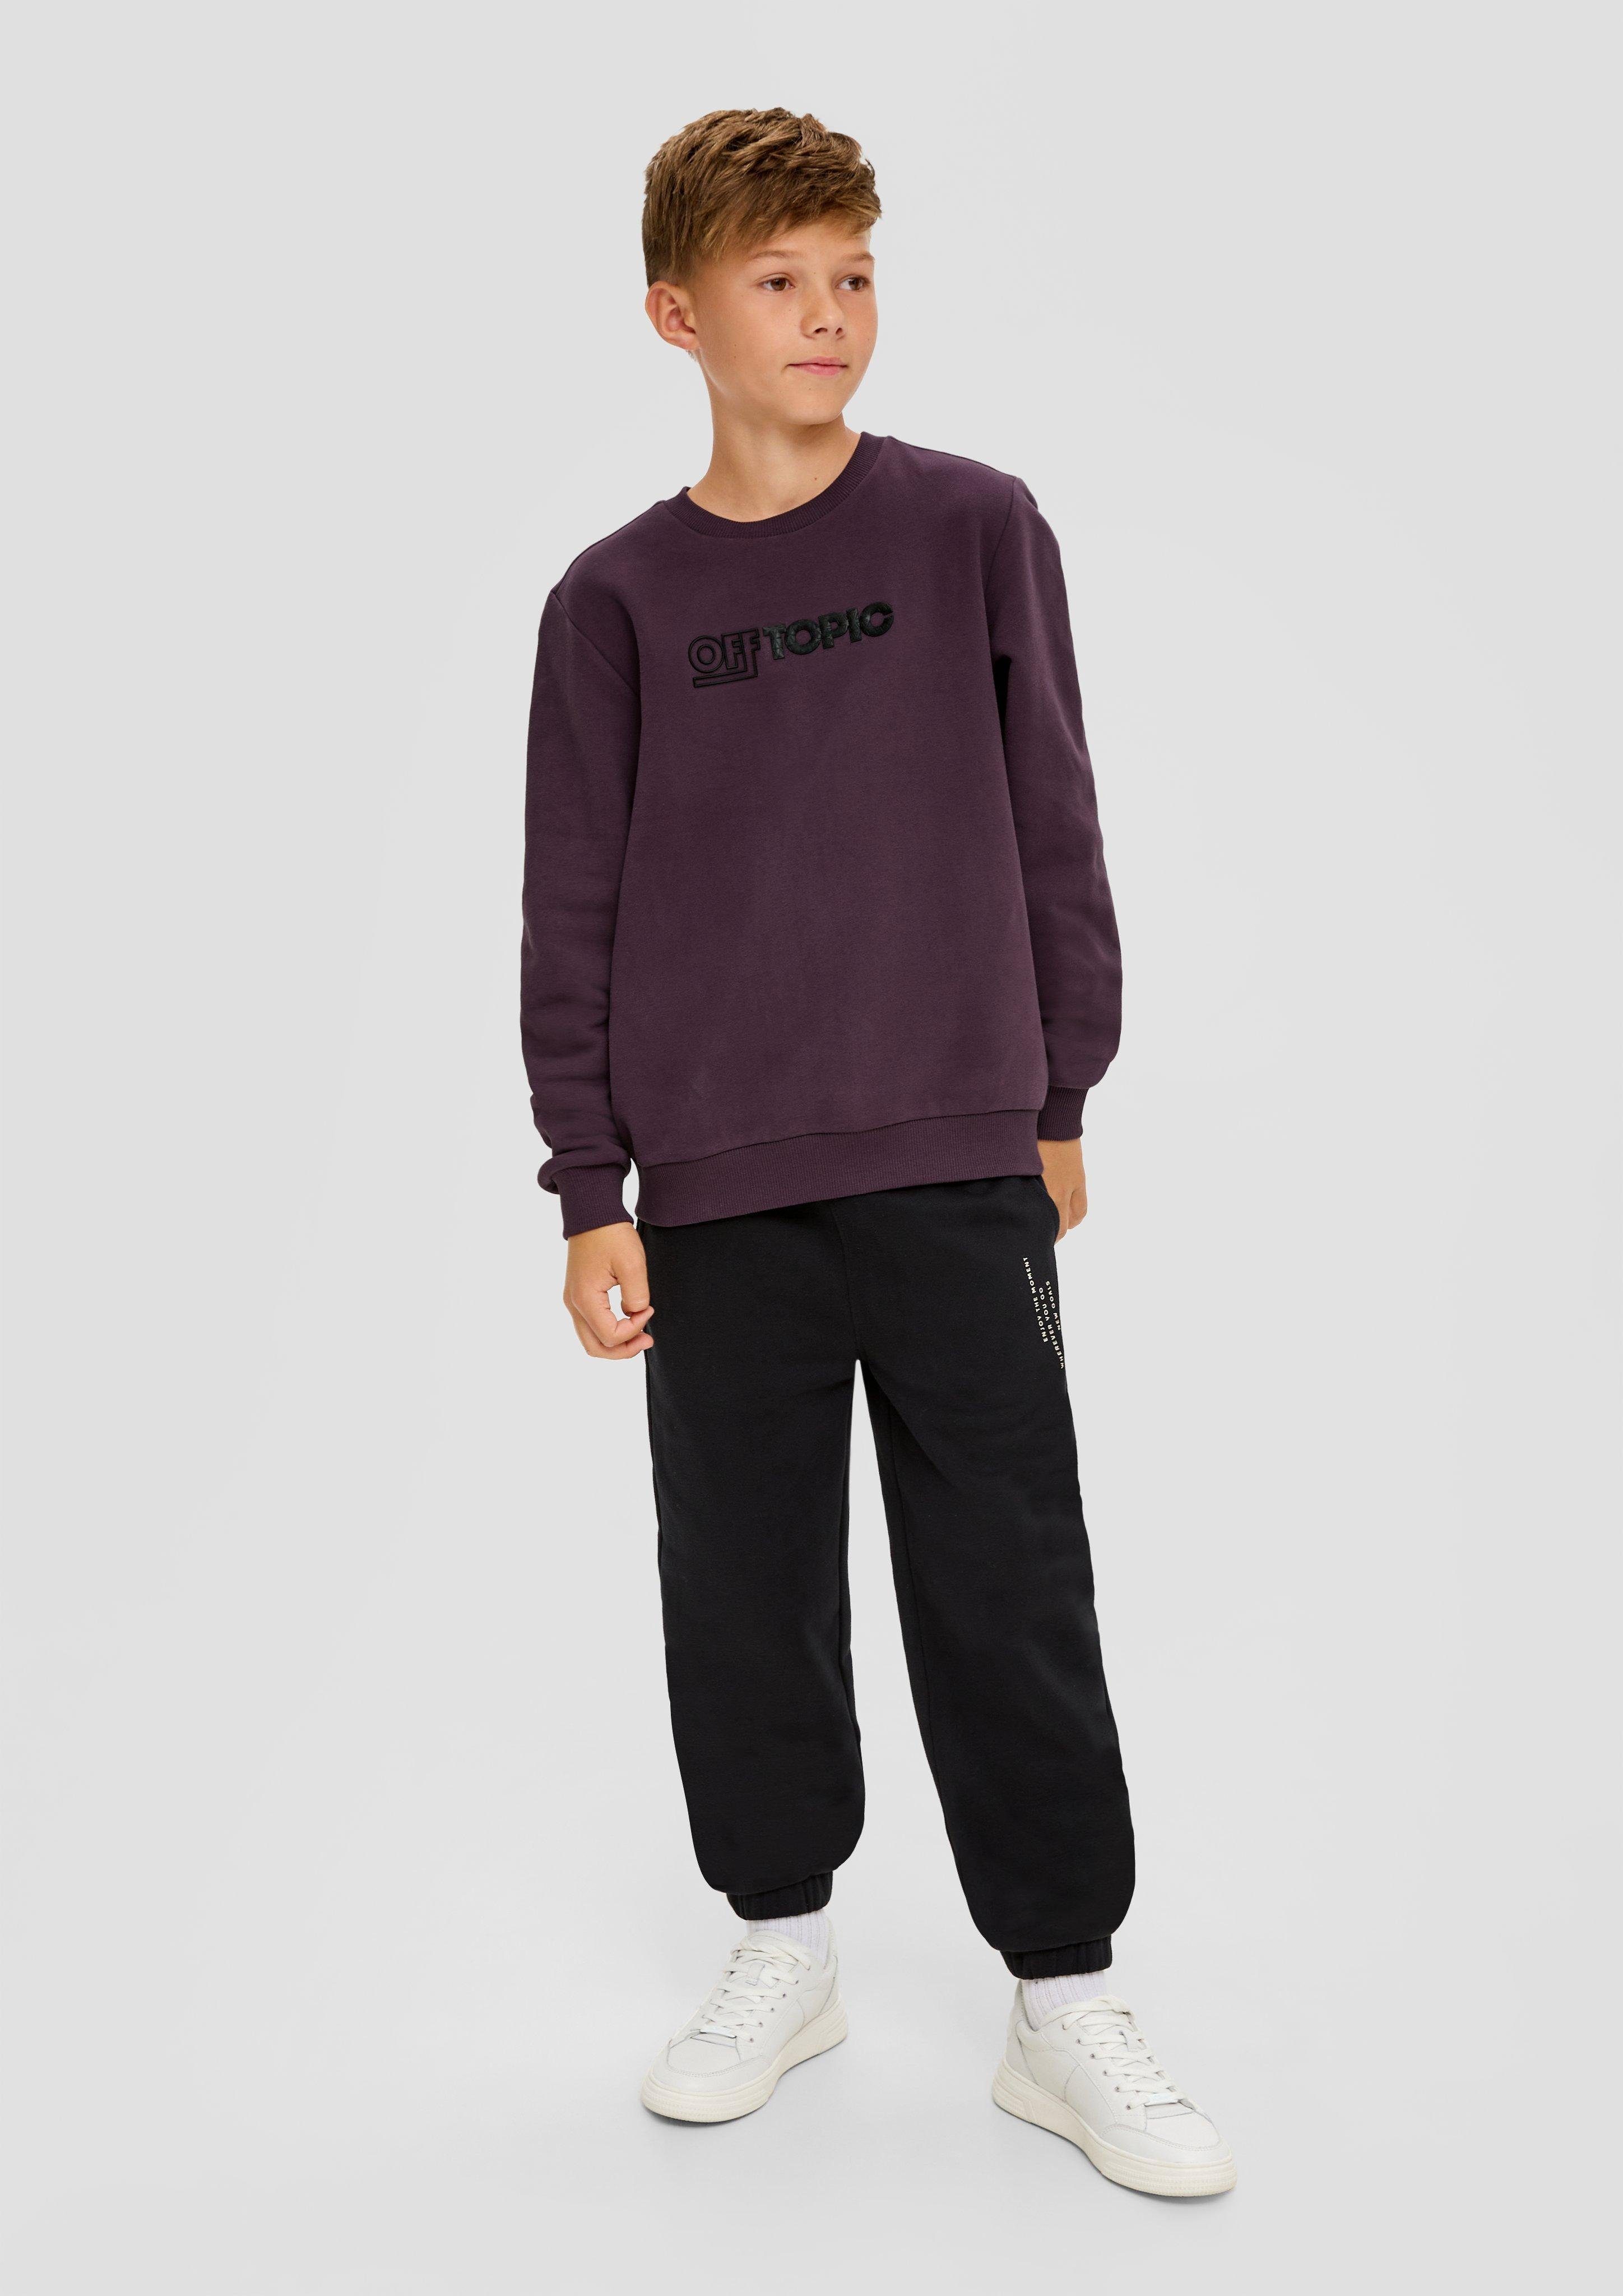 s.Oliver Junior Sweatshirt mit Frontprint aubergine